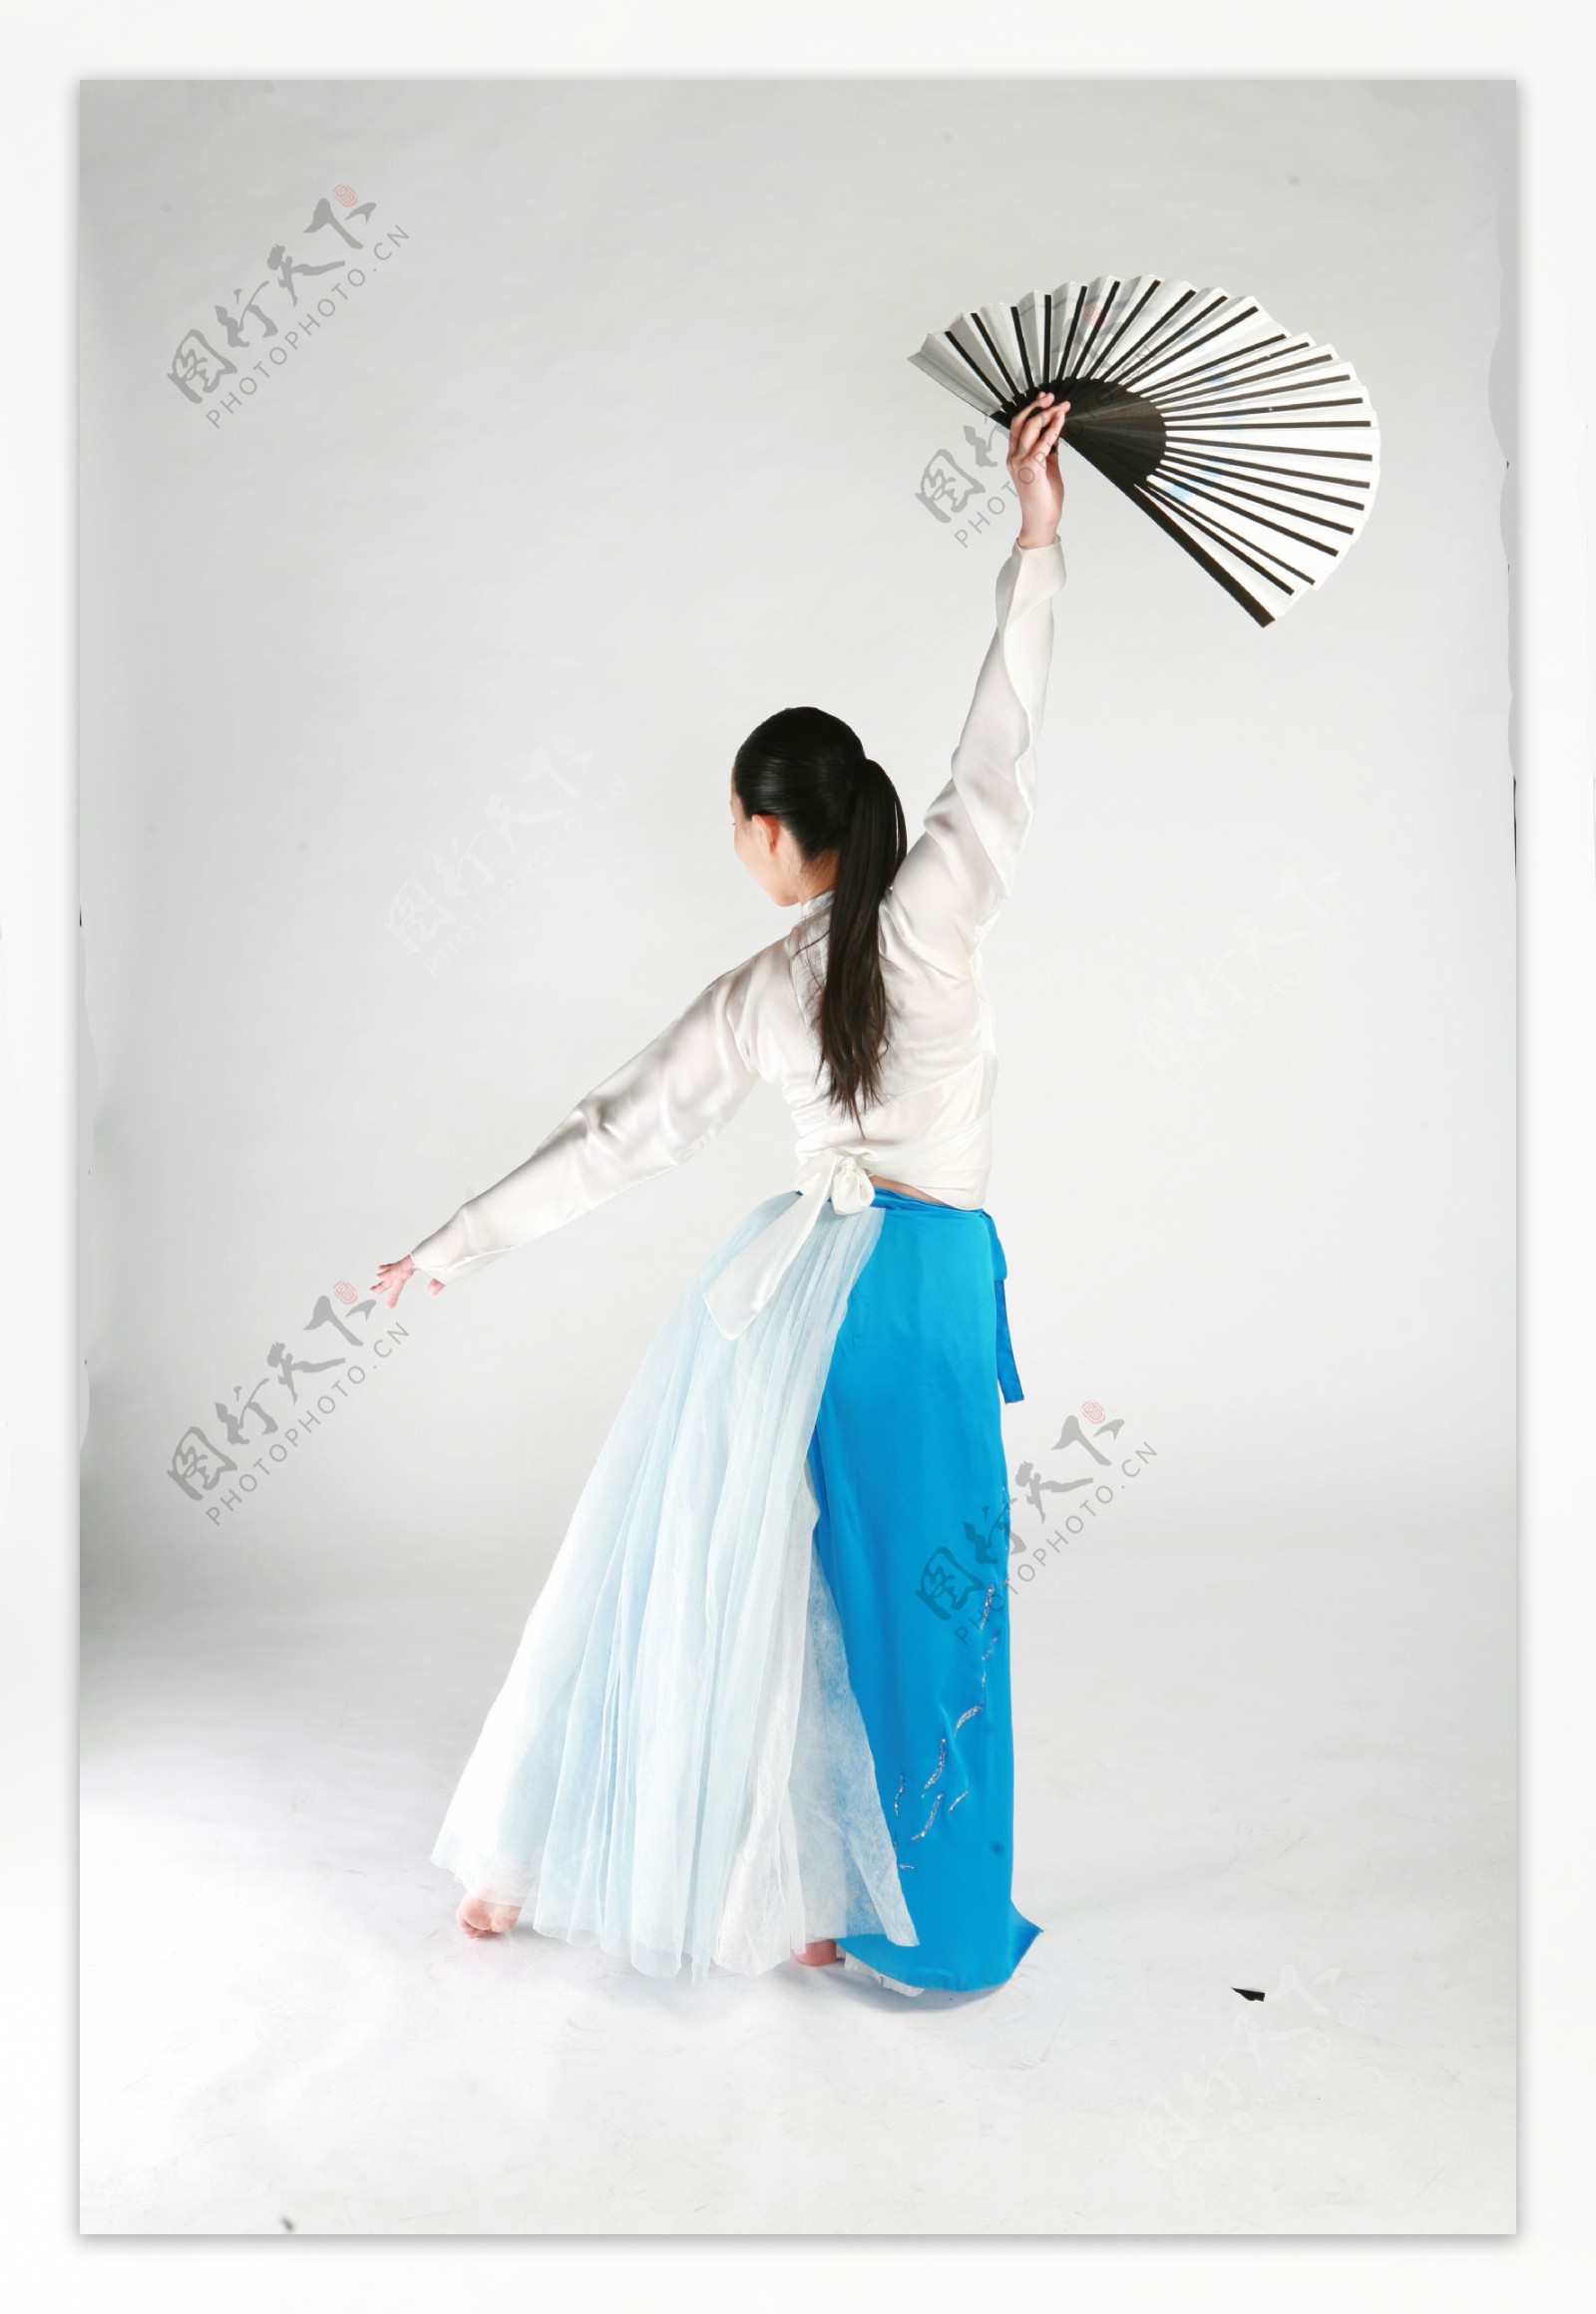 表演优美舞蹈的朝鲜美女图片